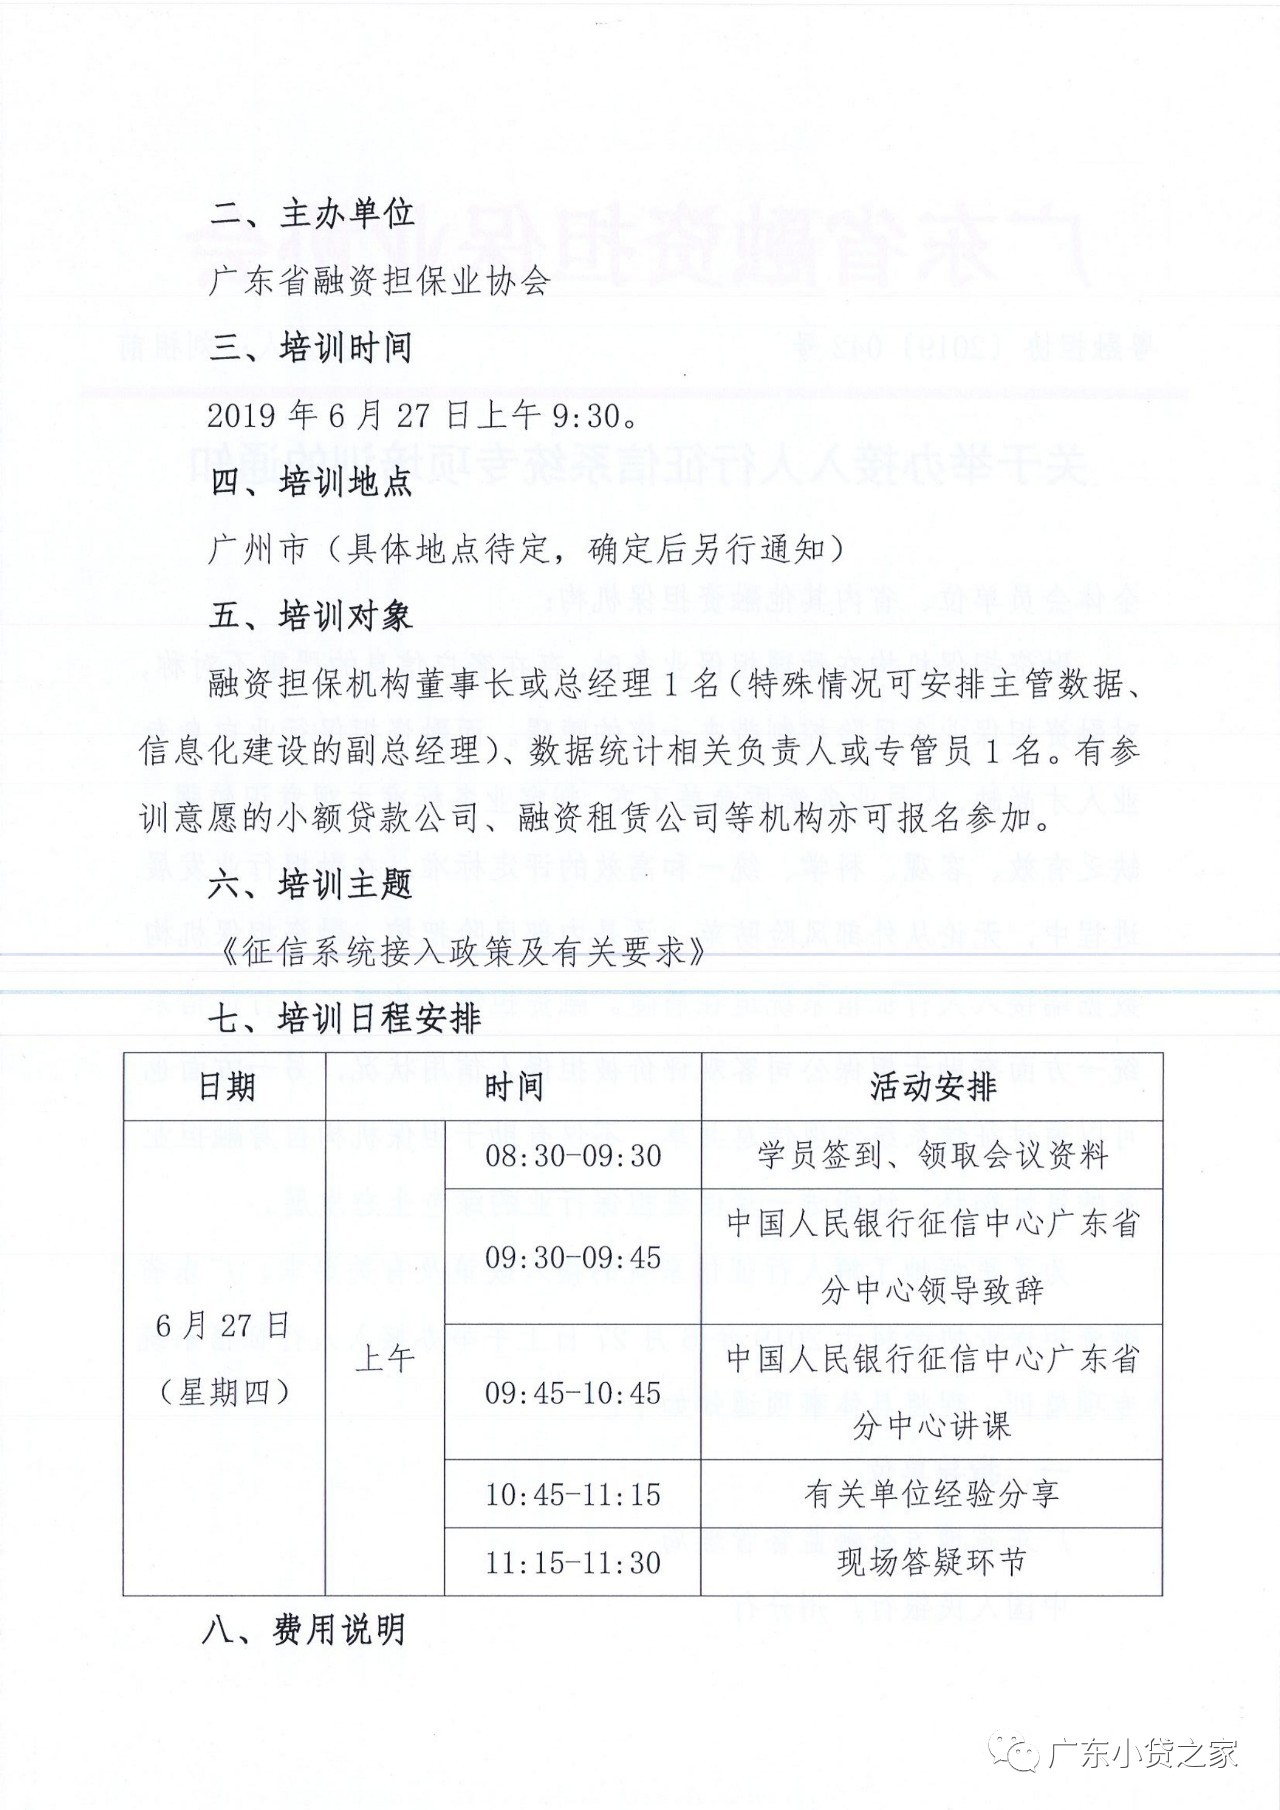 【重要通知】广东省小额贷款公司协会转发《关于举办接入征信系统专项培训的通知》